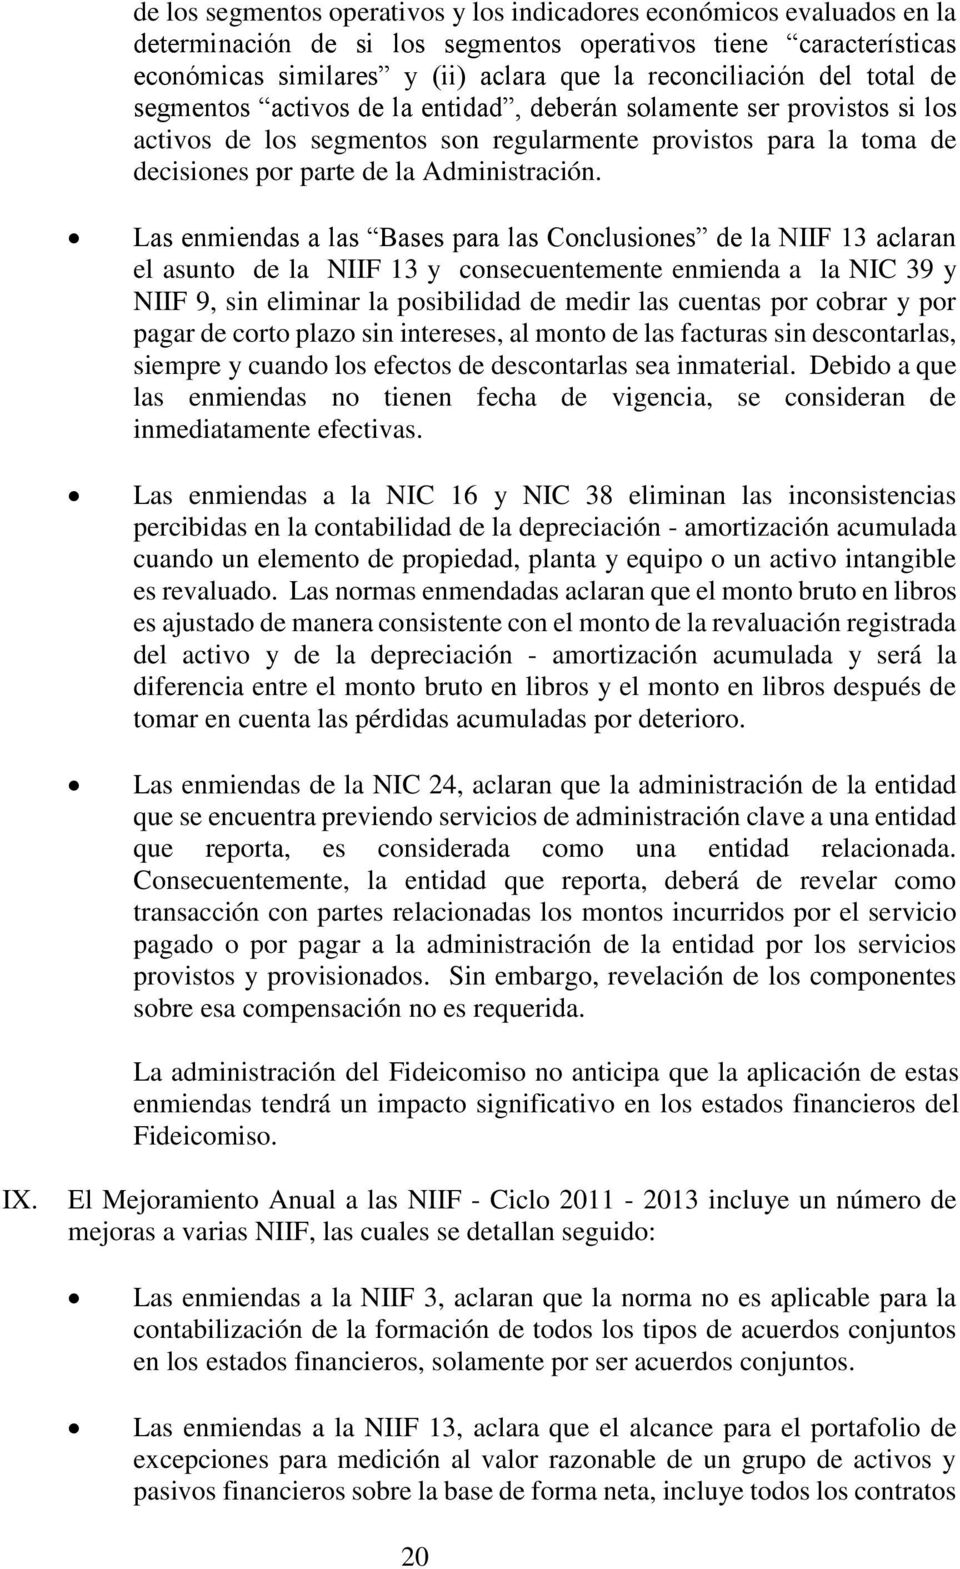 Las enmiendas a las Bases para las Conclusiones de la NIIF 13 aclaran el asunto de la NIIF 13 y consecuentemente enmienda a la NIC 39 y NIIF 9, sin eliminar la posibilidad de medir las cuentas por